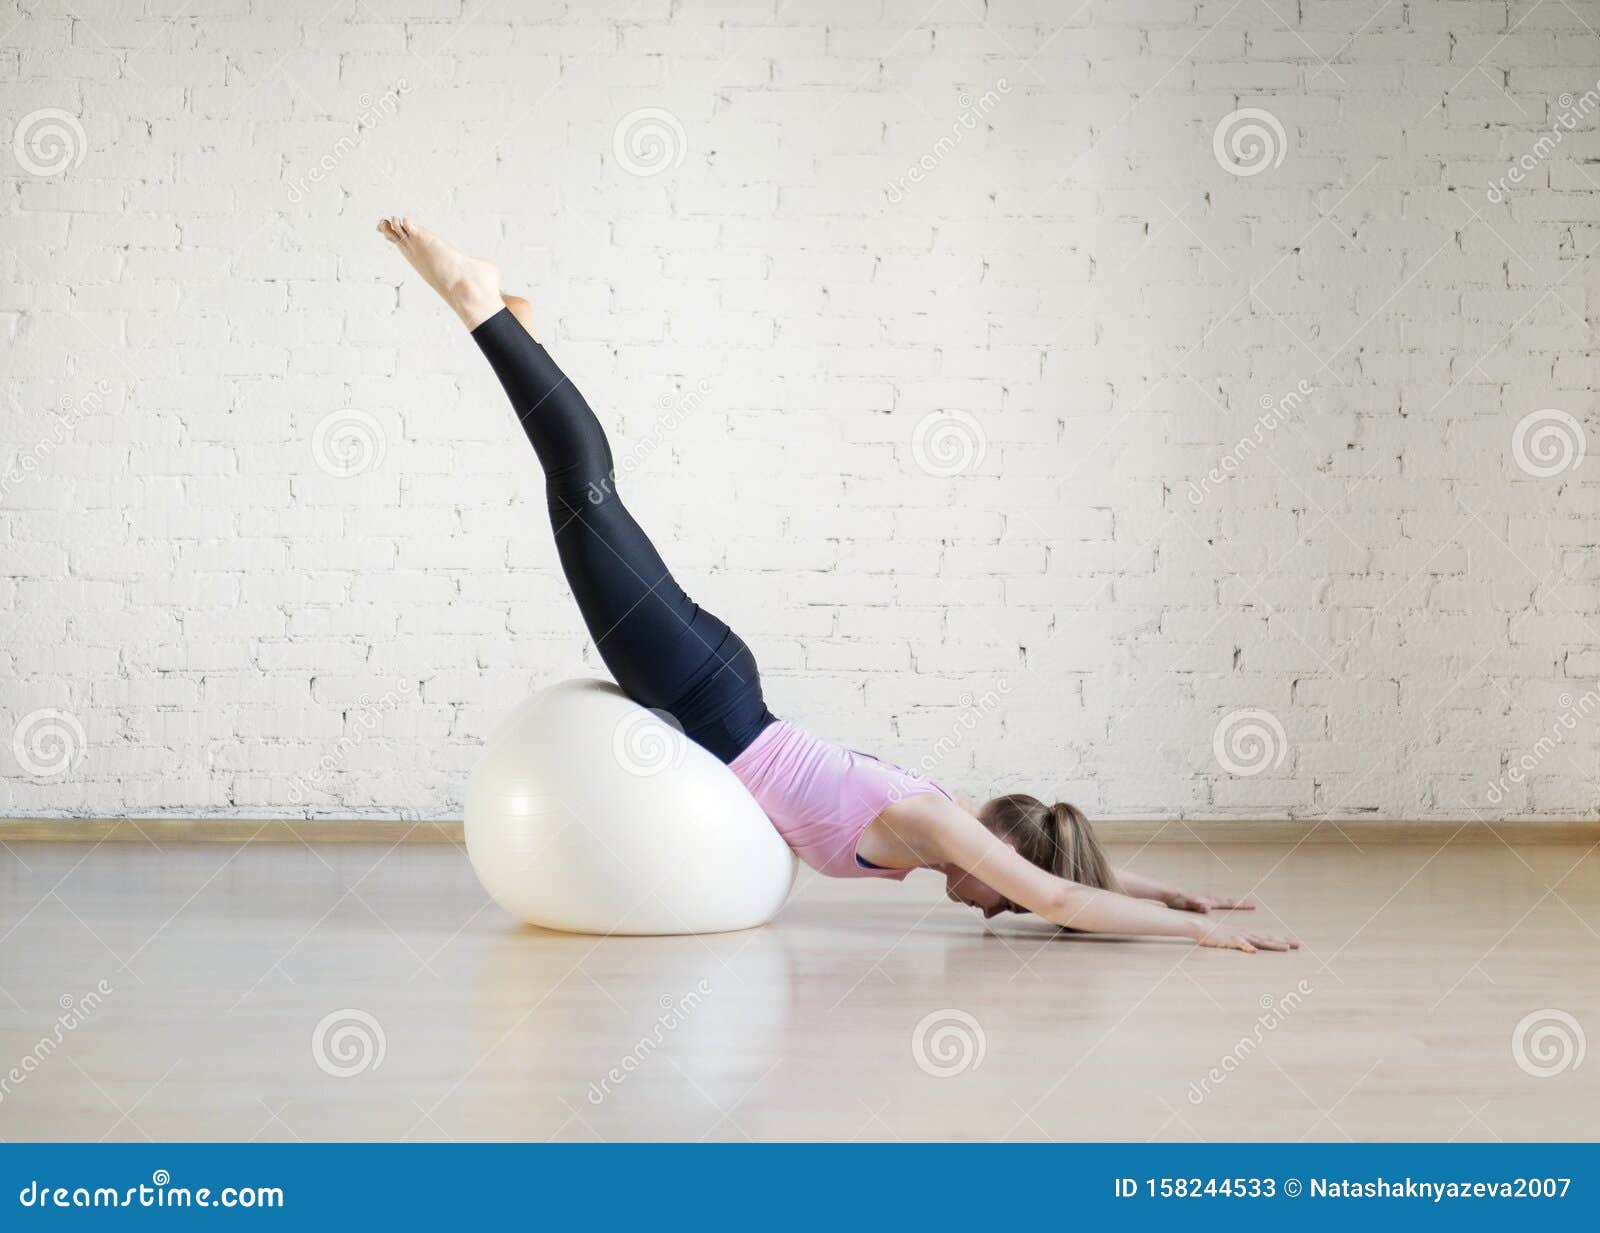 Blokkeren alleen bak Caucasian Girl Practice Pilates with Big Fit Ball in Fitness Studio, Upside  Down Pose, Selective Focus. Stock Image - Image of sport, studio: 158244533